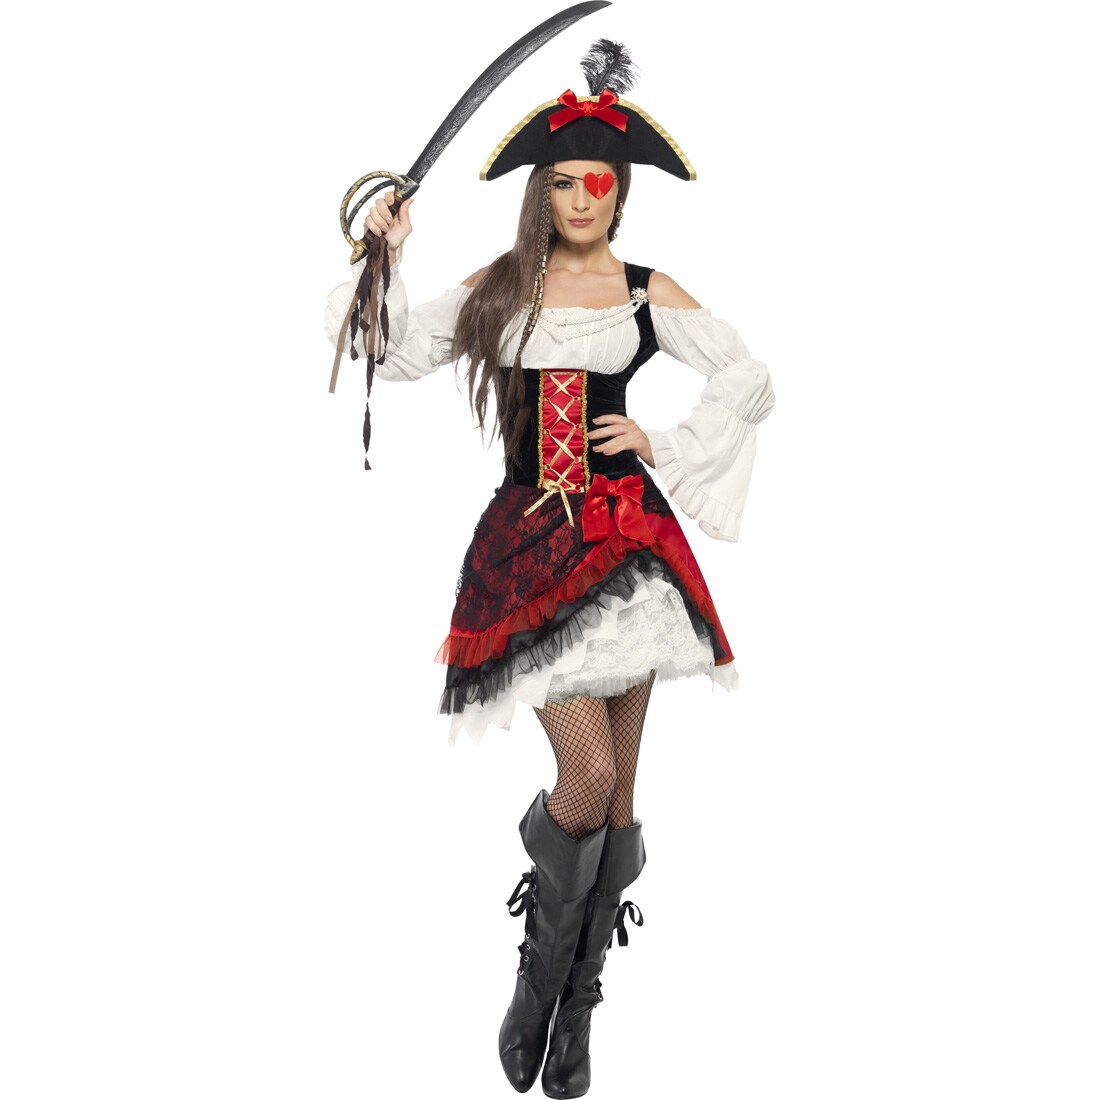 Piratin Kostüm Piratenkostüm Damen M 4042 Piratinnenkostüm Piratenkl 8874